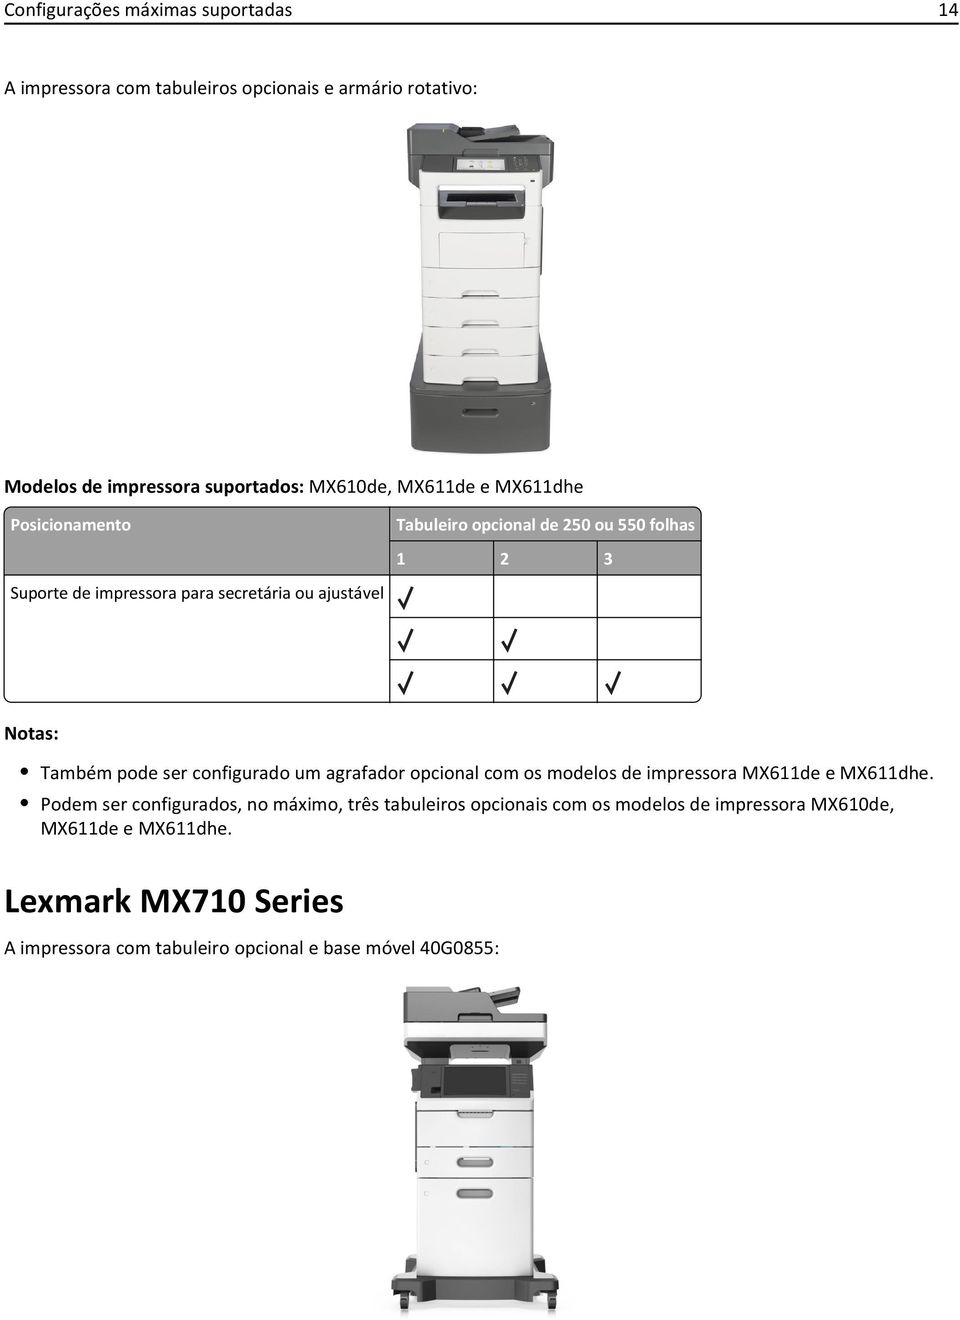 Também pode ser configurado um agrafador opcional com os modelos de impressora MX611de e MX611dhe.